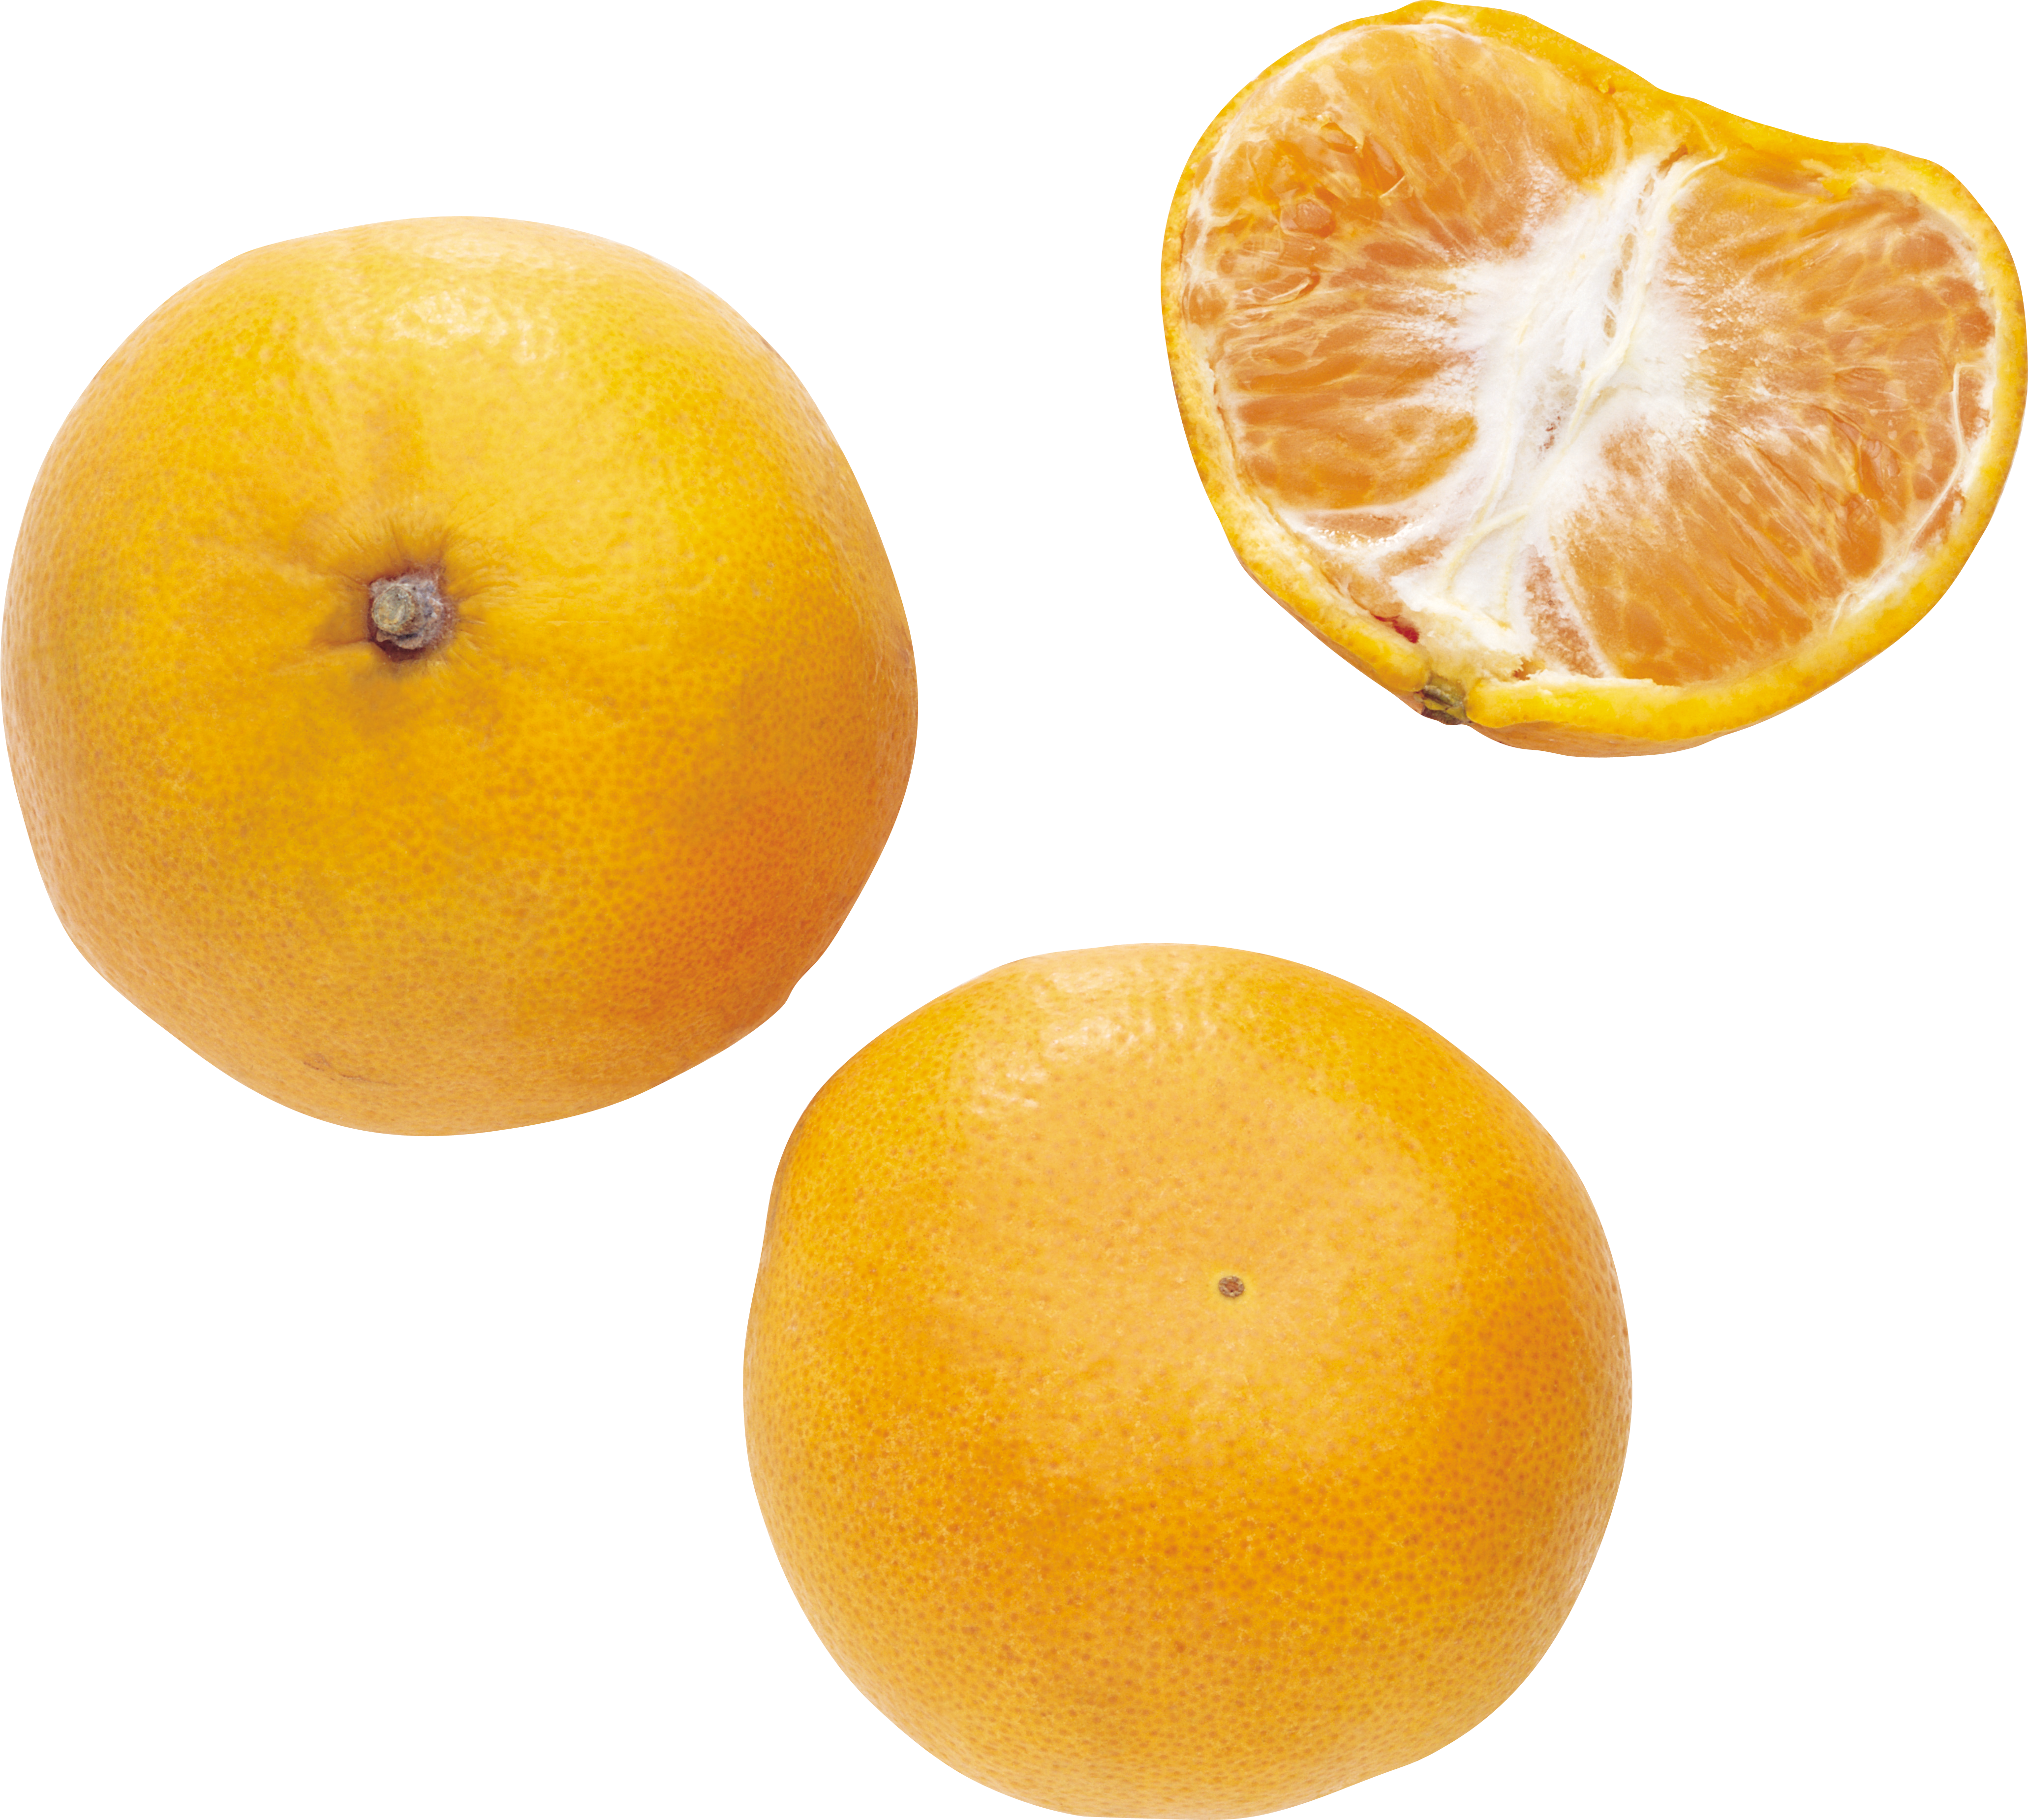 Mandarin